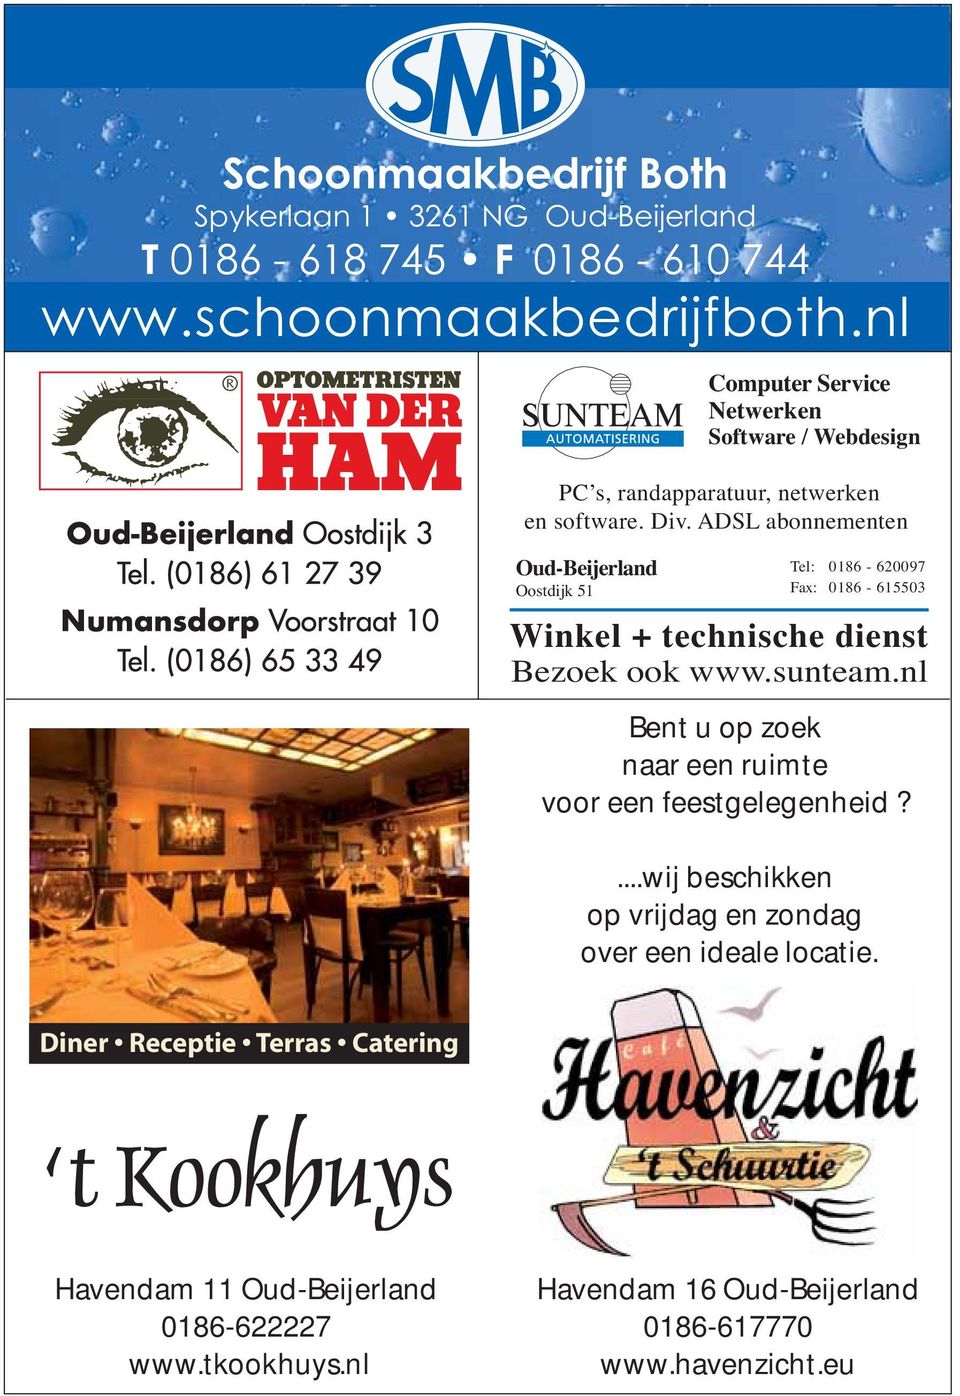 ADSL abonnementen Oud-Beijerland Oostdijk 51 Tel: 0186-620097 Fax: 0186-615503 Winkel + technische dienst Bezoek ook www.sunteam.